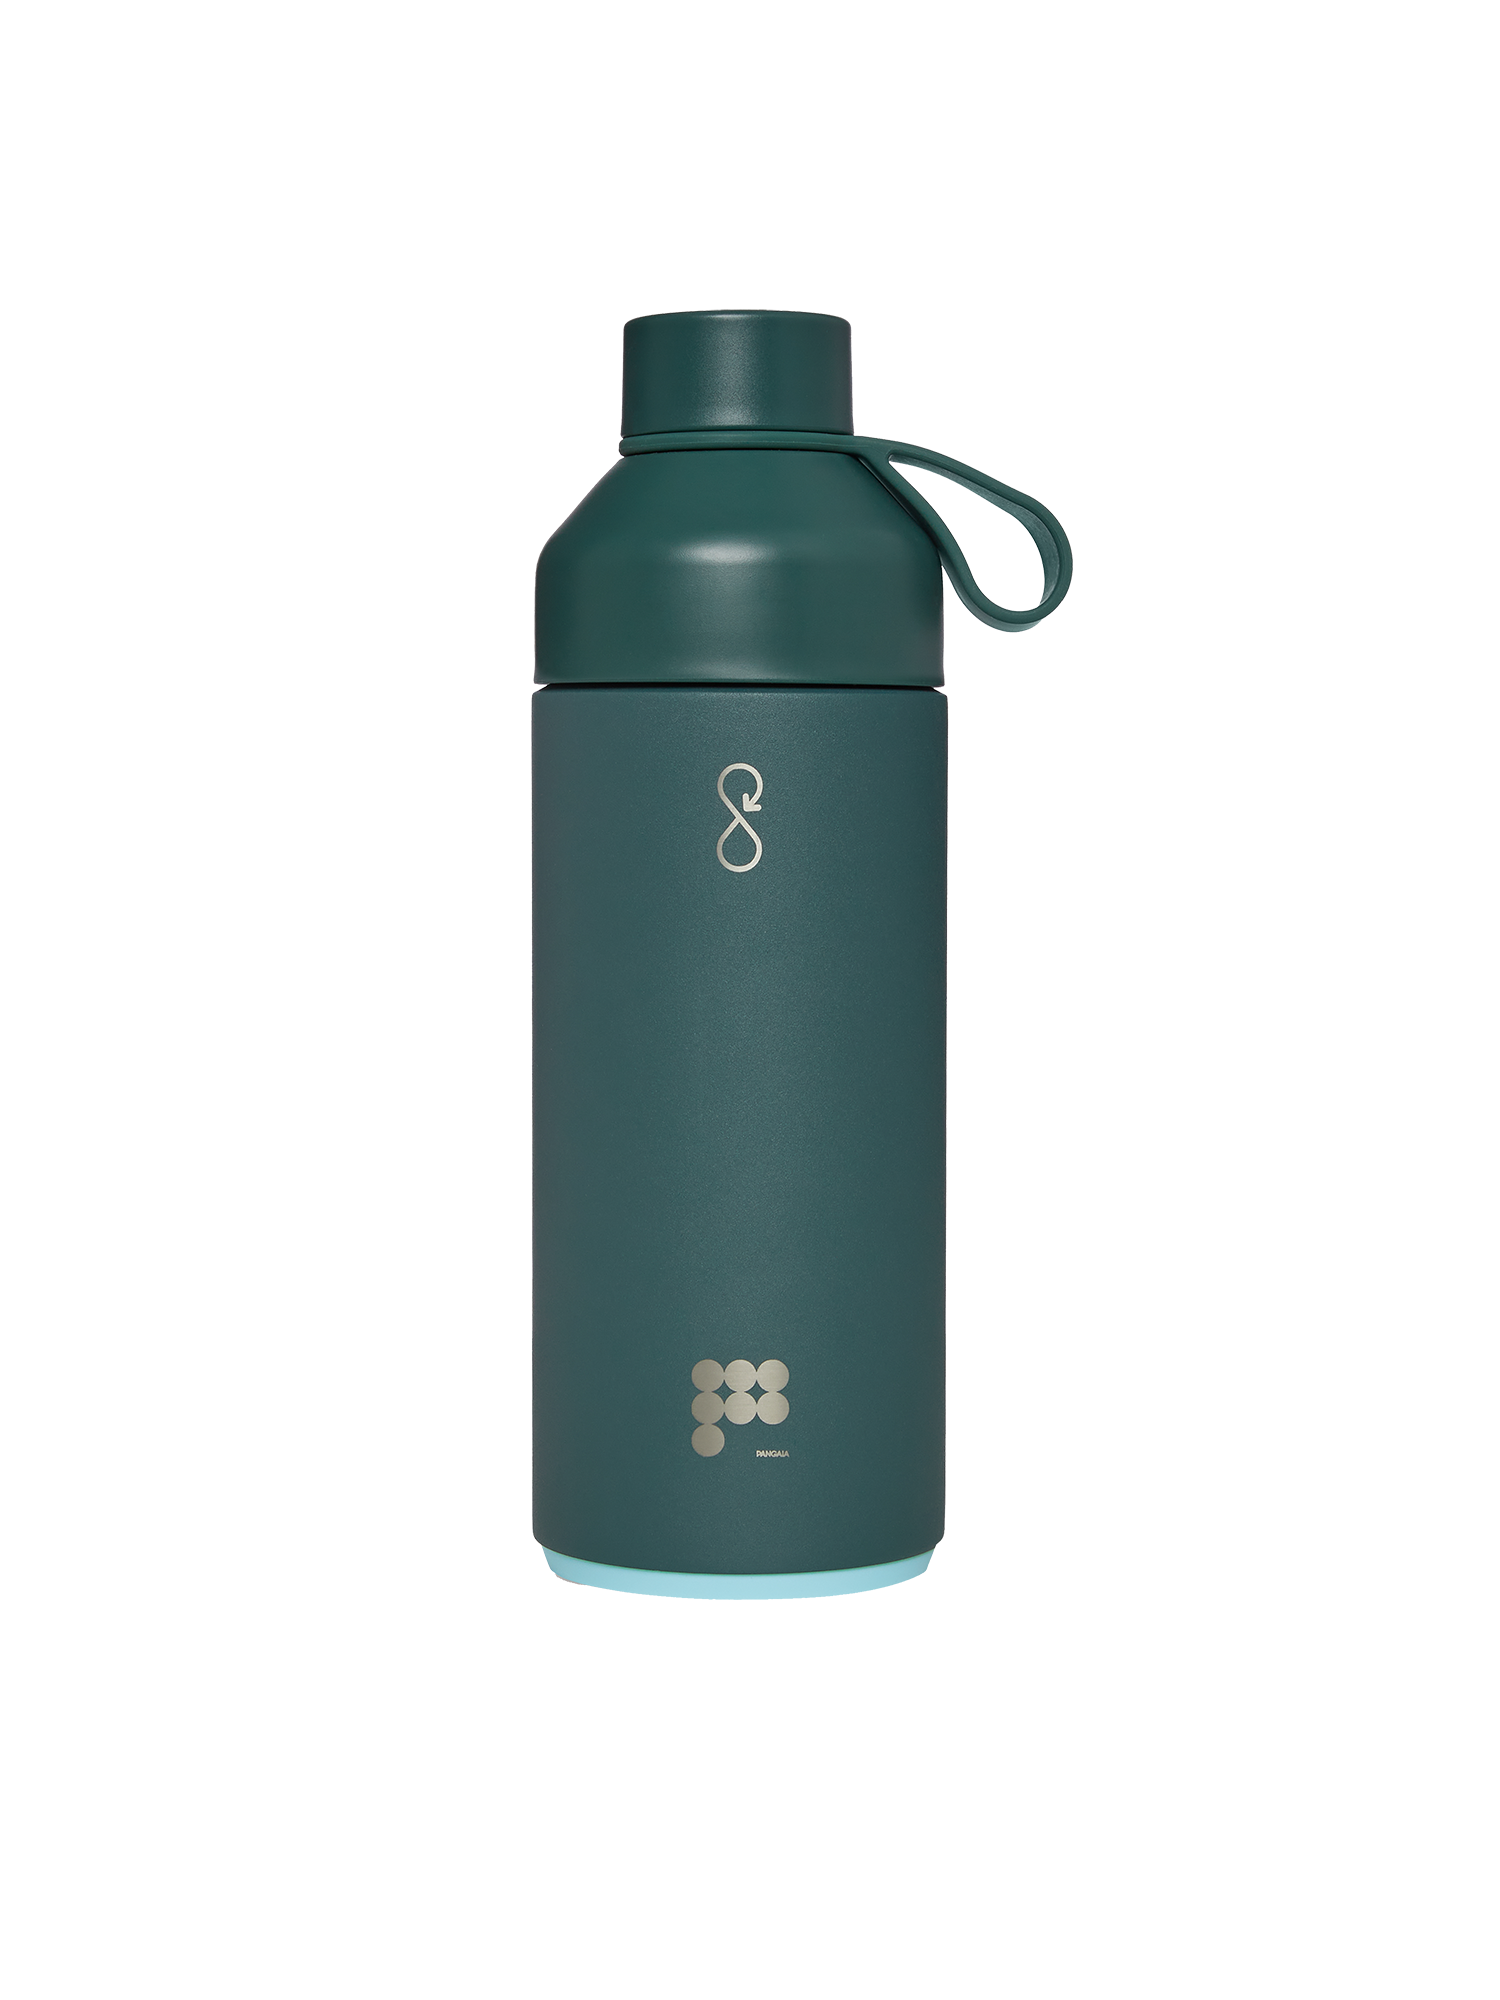 Pangaia Ocean Bottle - 1 Litre—rosemary green packshot-3